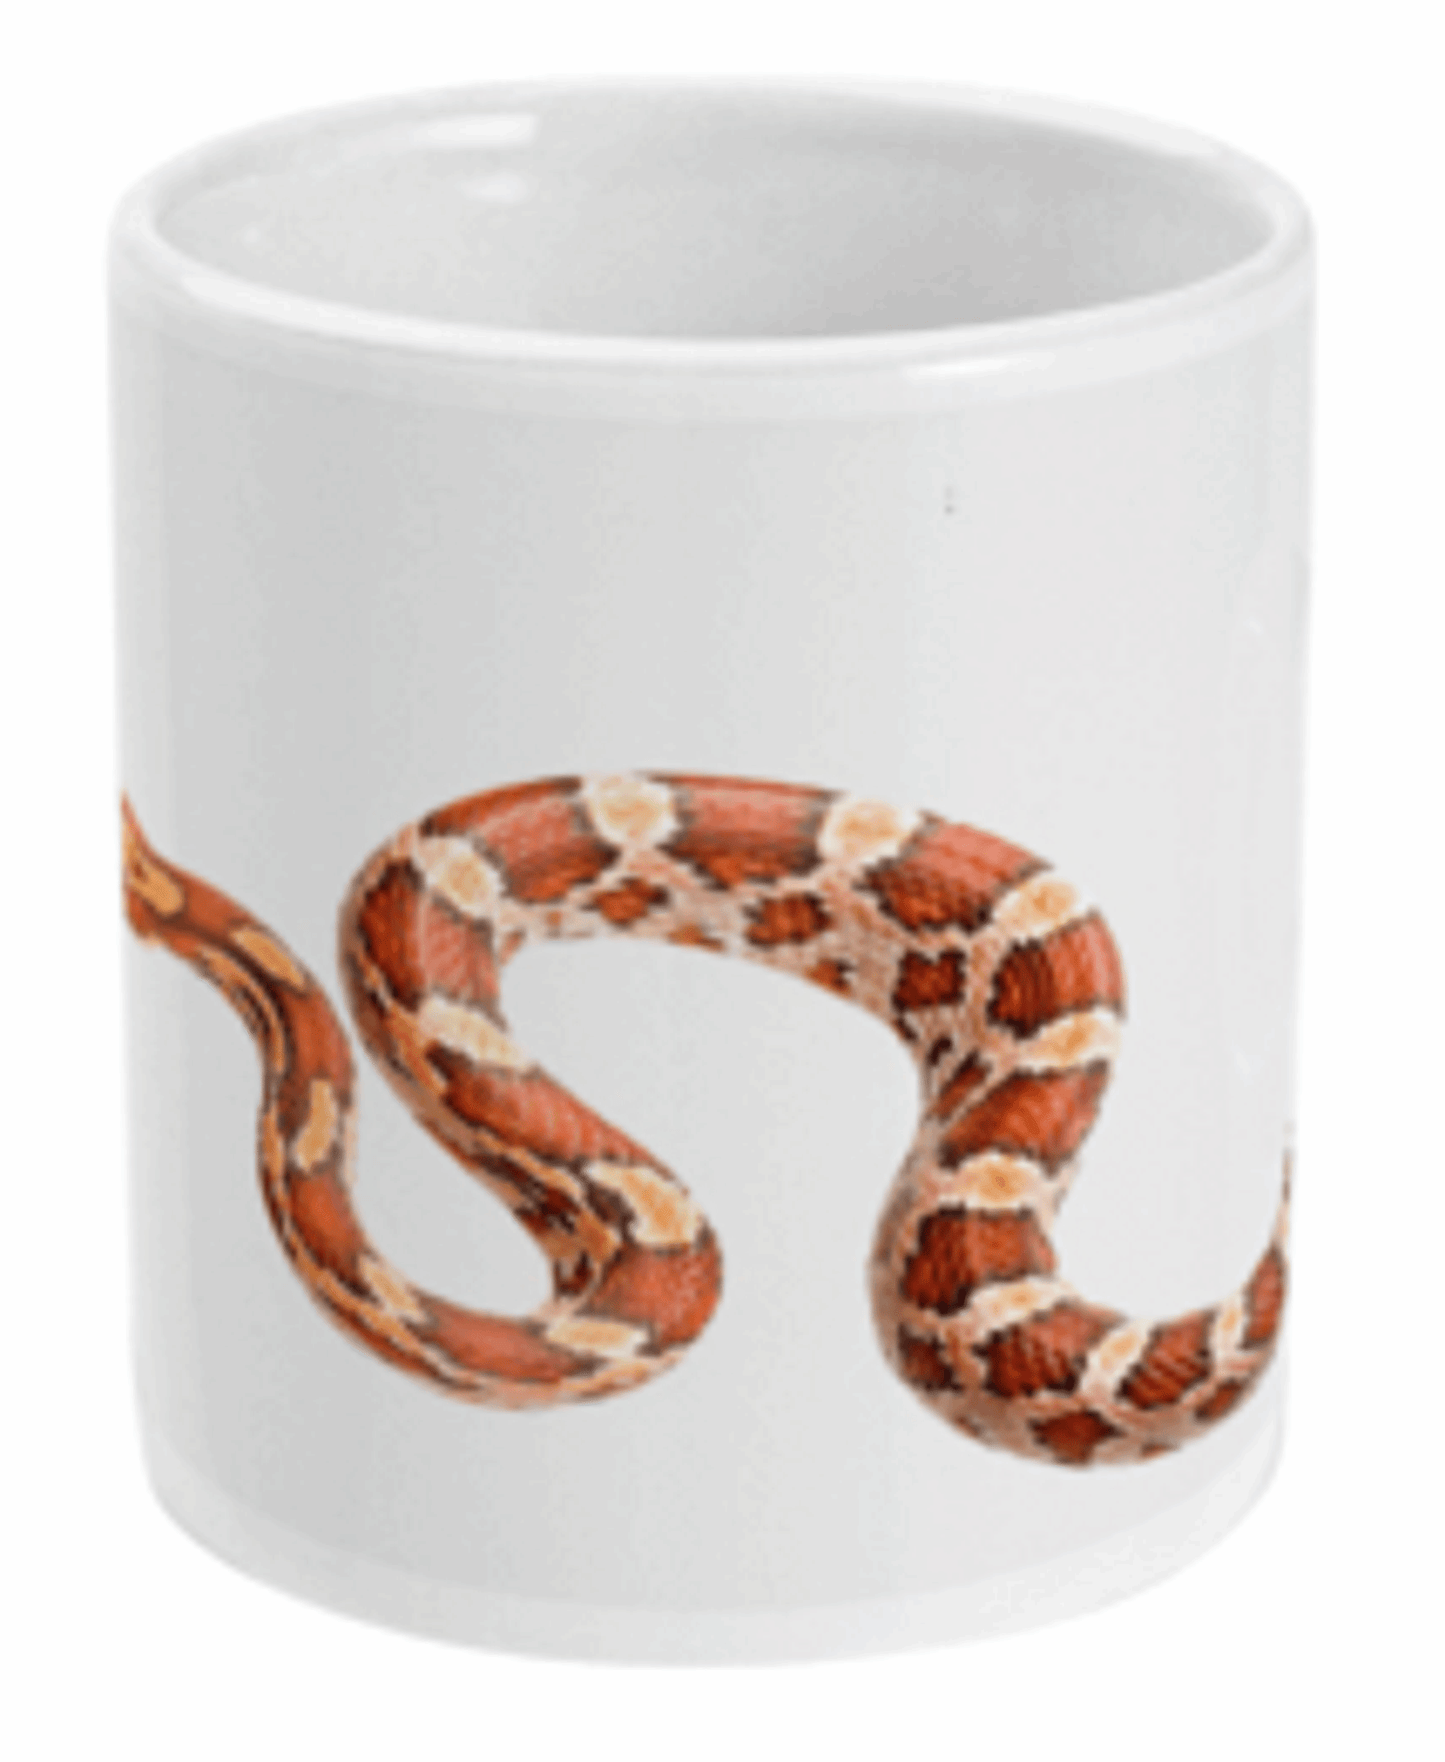  Corn Snake Wrapped Around Mug by Free Spirit Accessories sold by Free Spirit Accessories